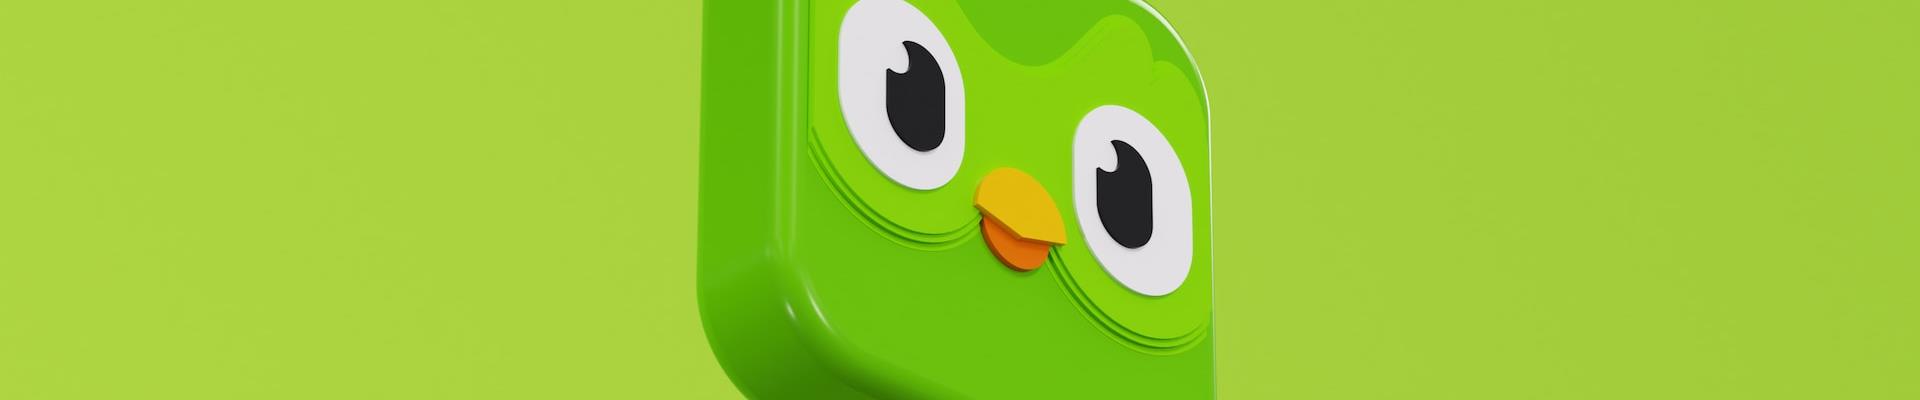 O marketing da Duolingo no ano em que a marca estará pela primeira vez no Super Bowl